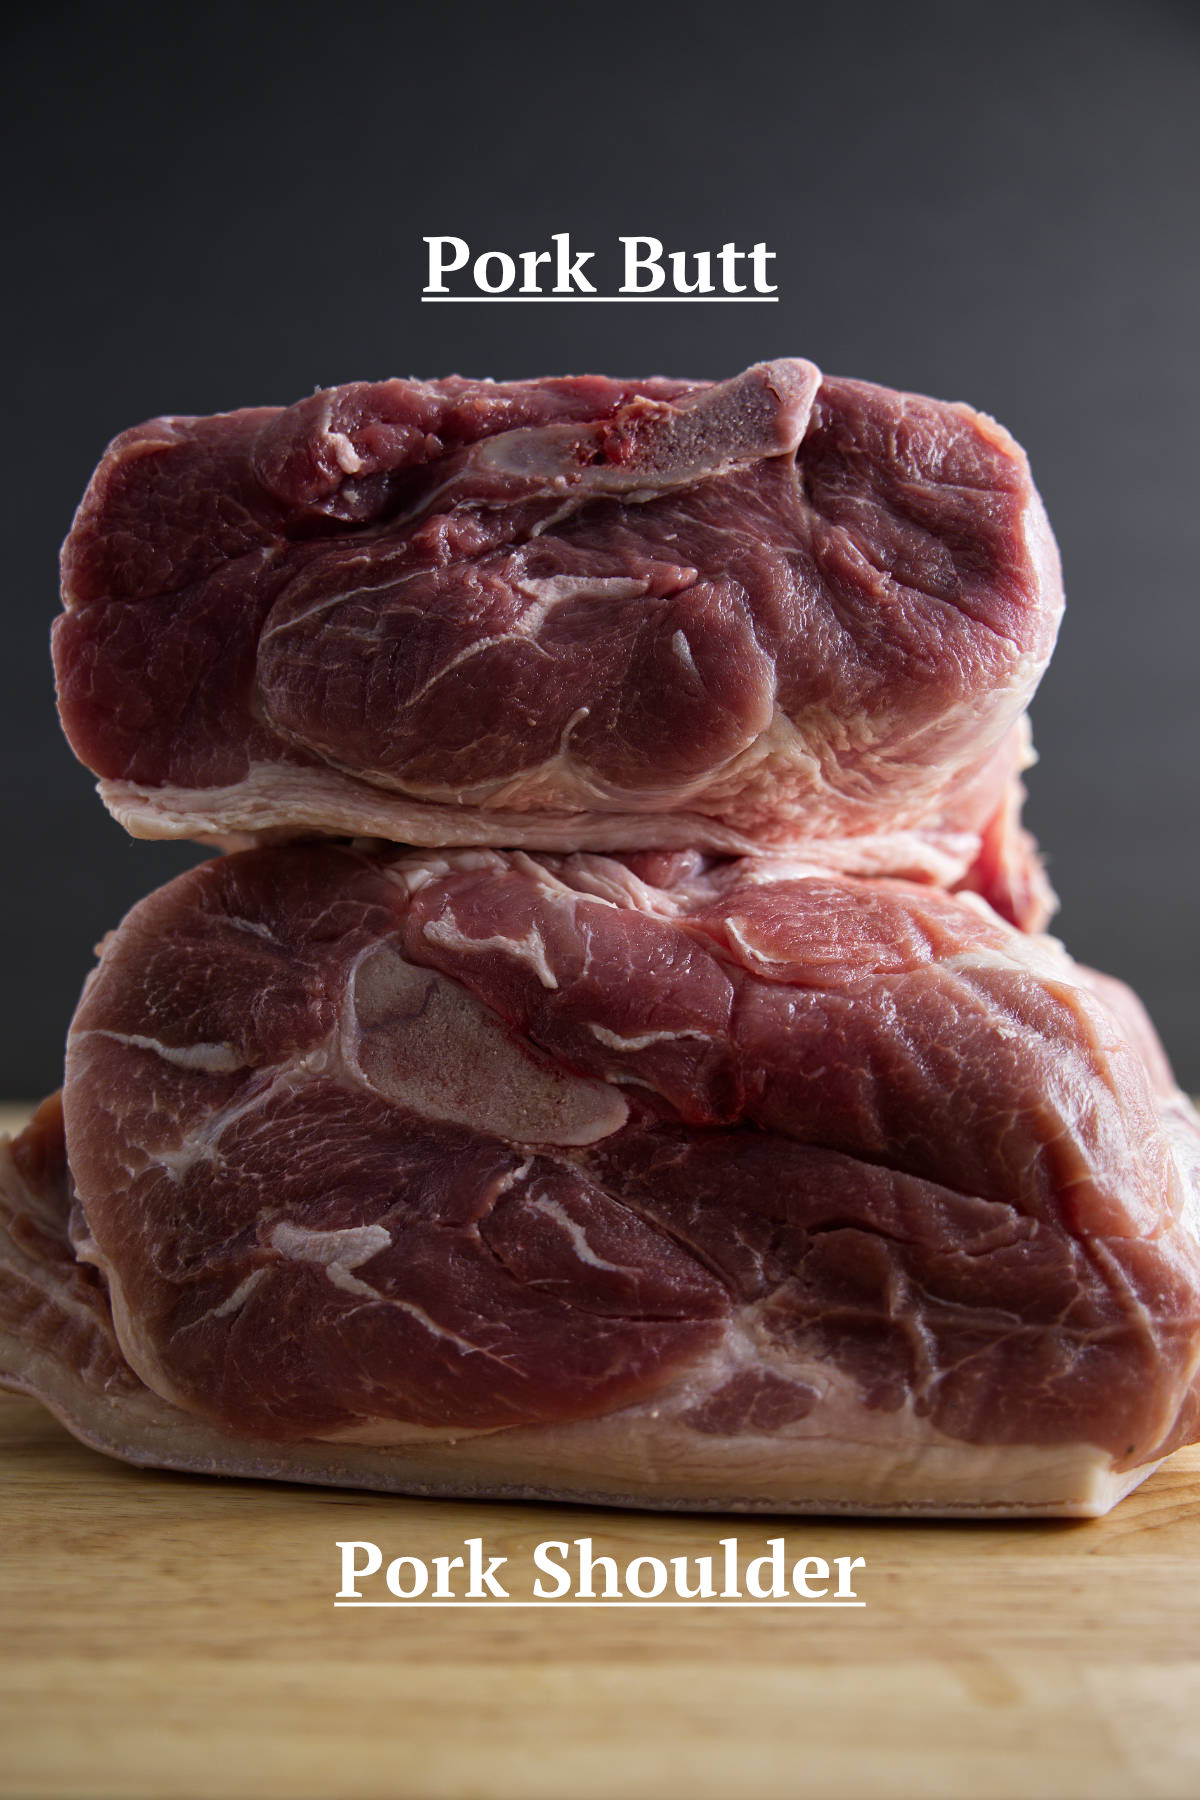 Pork shoulder (picnic shoulder) and pork butt (Boston butt) stacked on a butcher block.